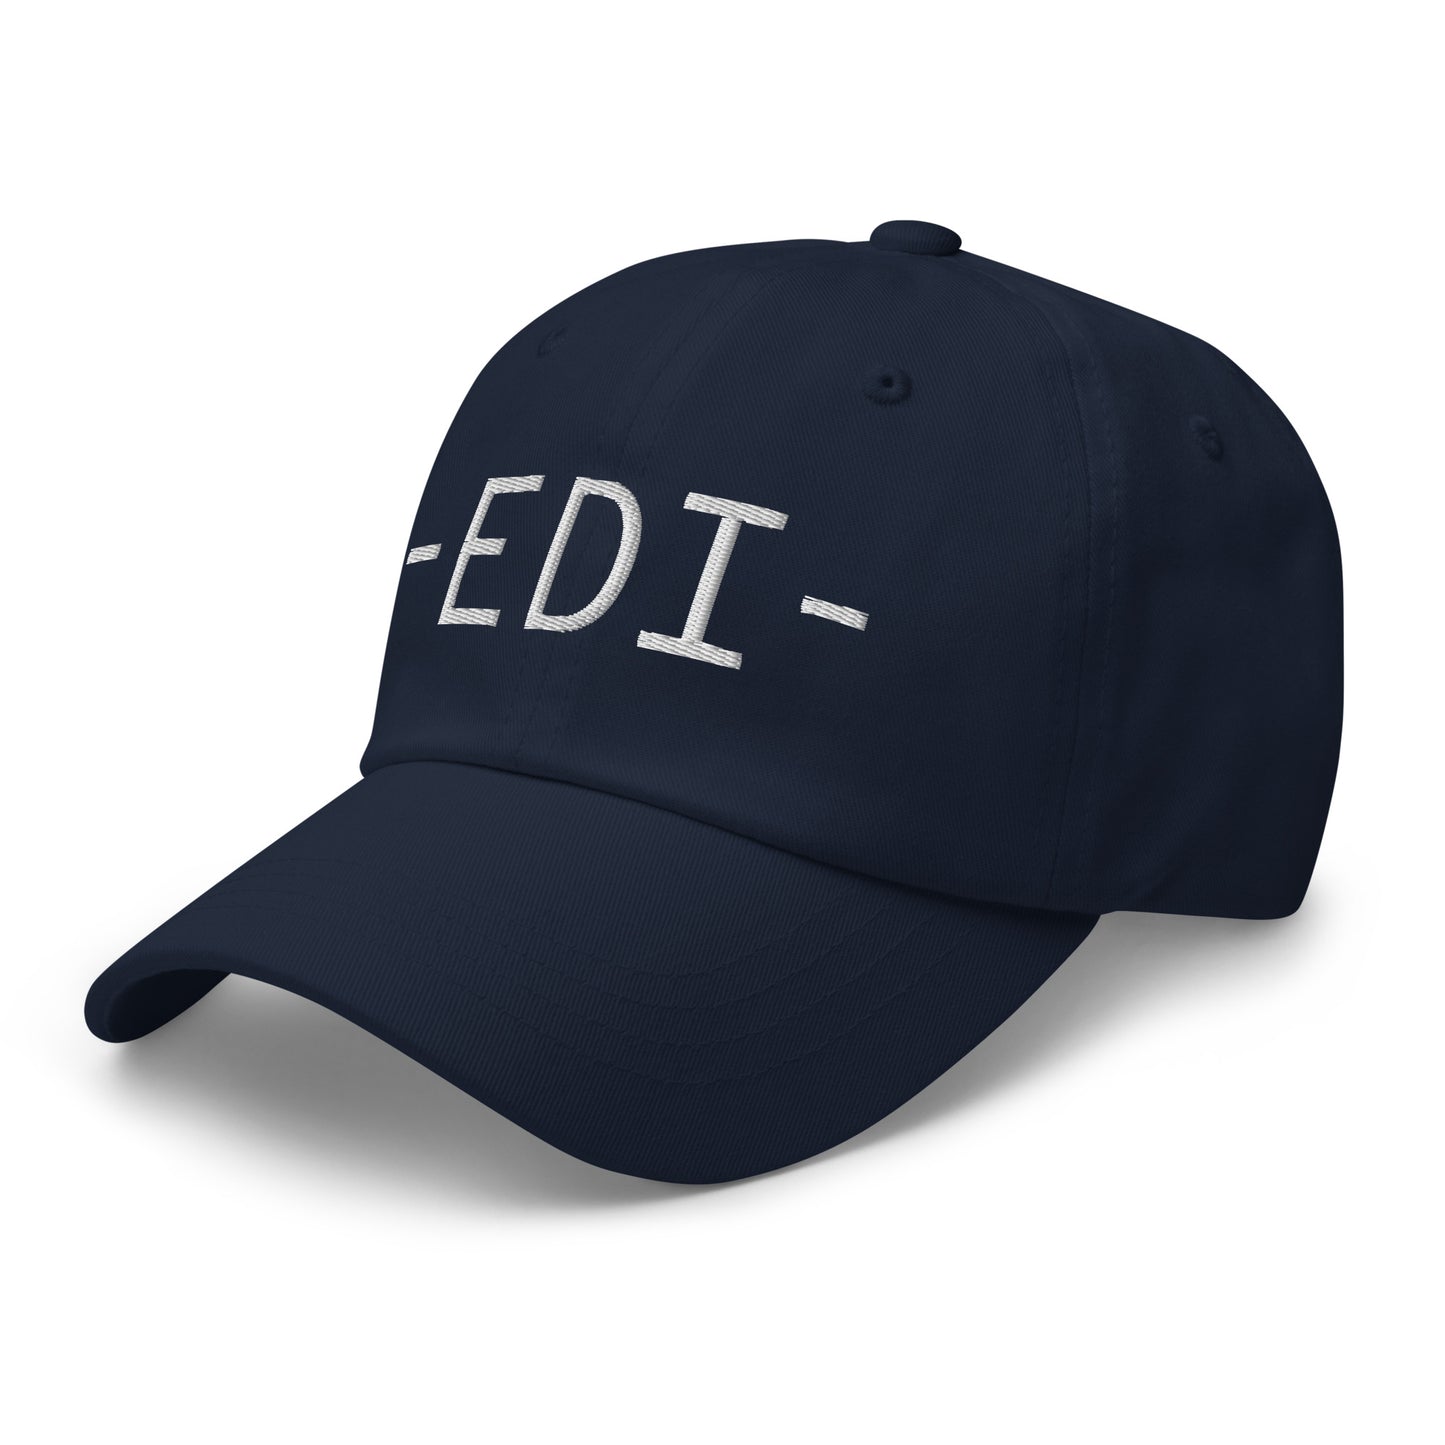 Souvenir Baseball Cap - White • EDI Edinburgh • YHM Designs - Image 15